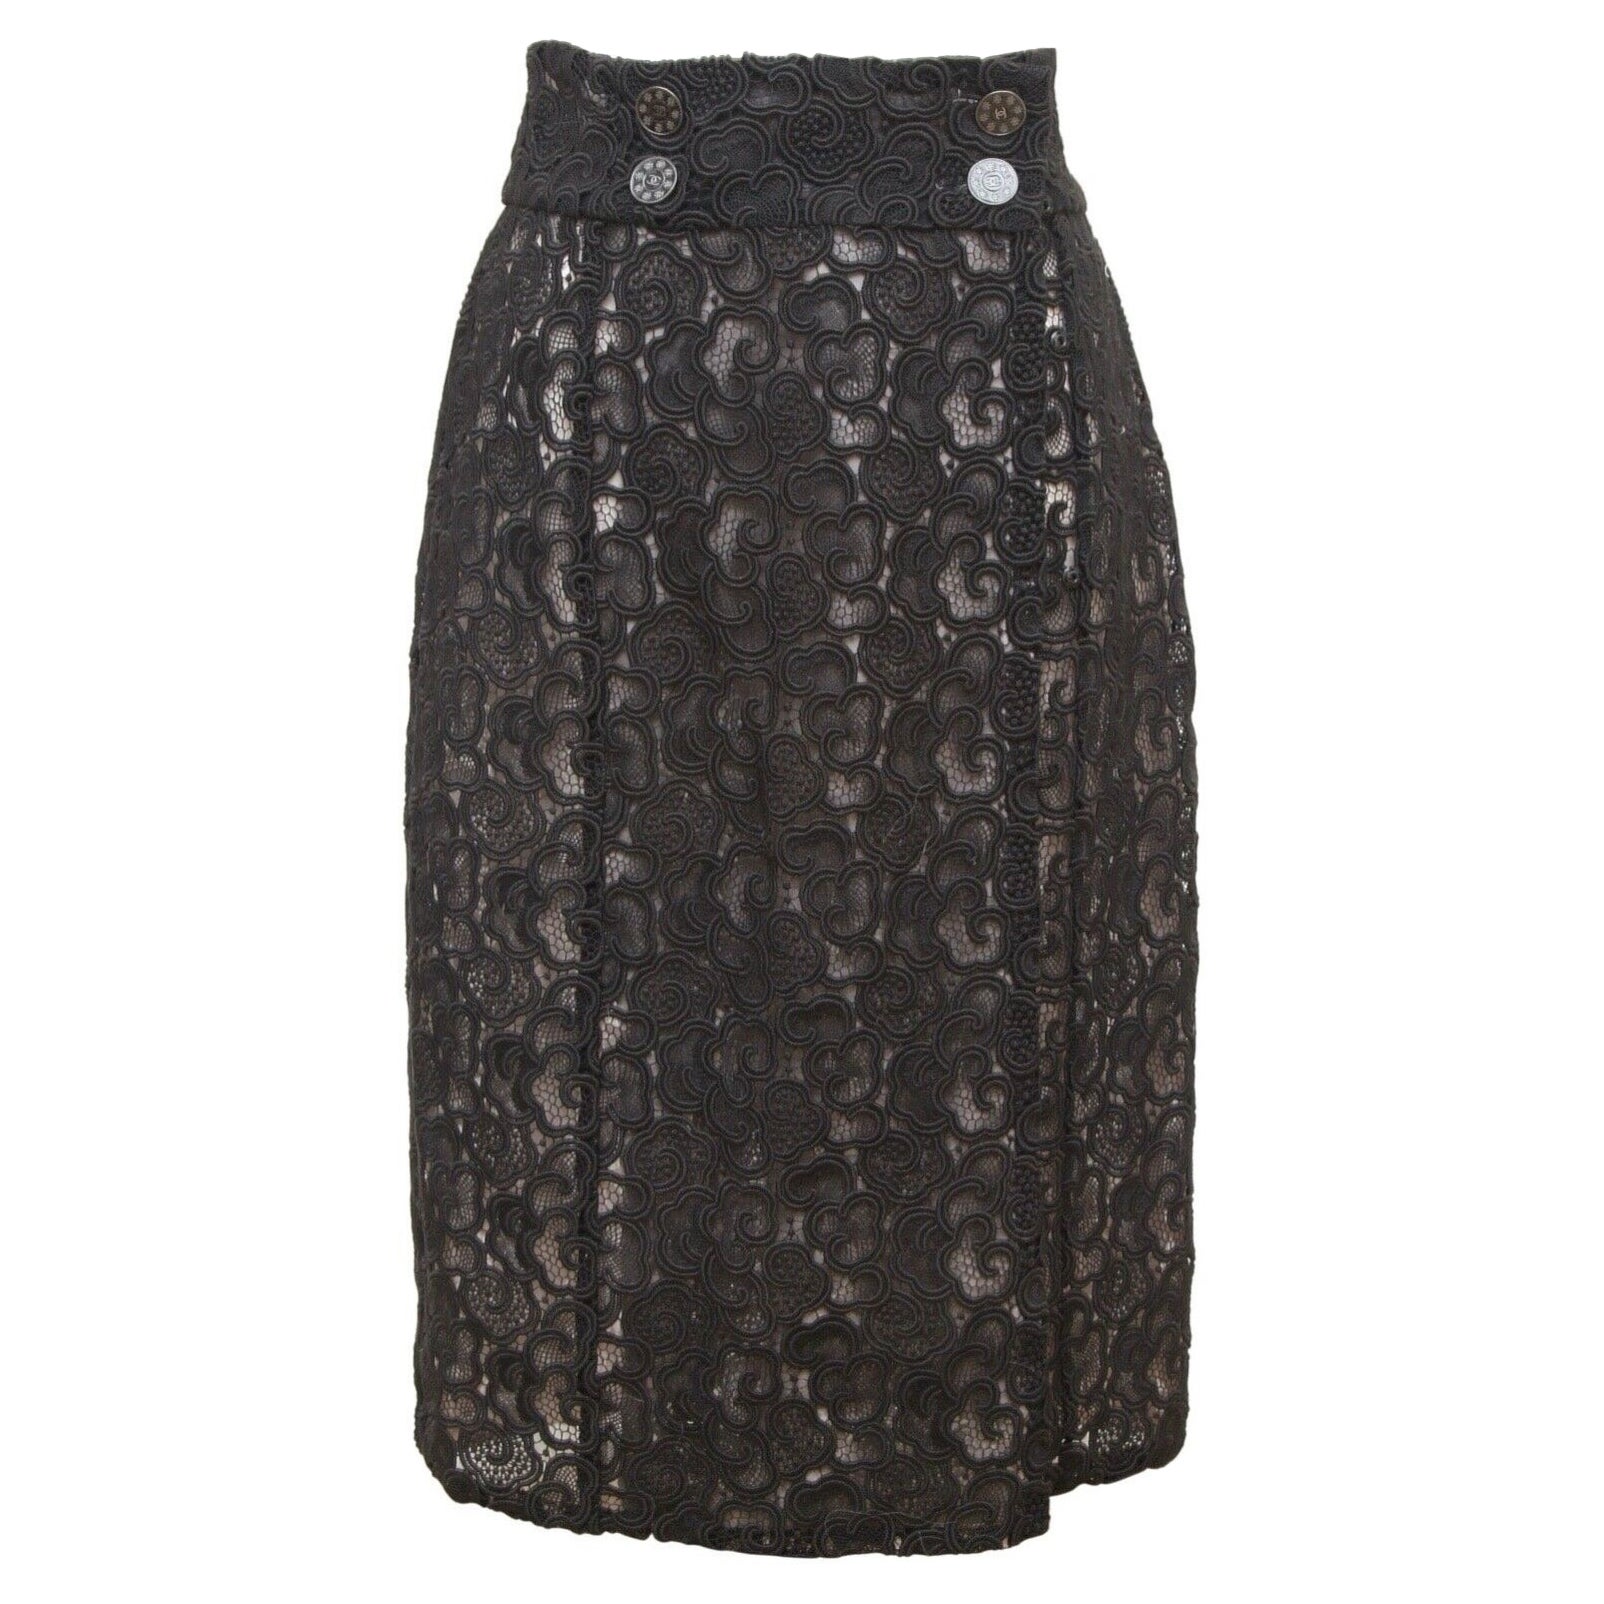 CHANEL Black Skirt Lace Cotton Faux Wrap Lined Paris Seoul 2016 Sz 38 For Sale